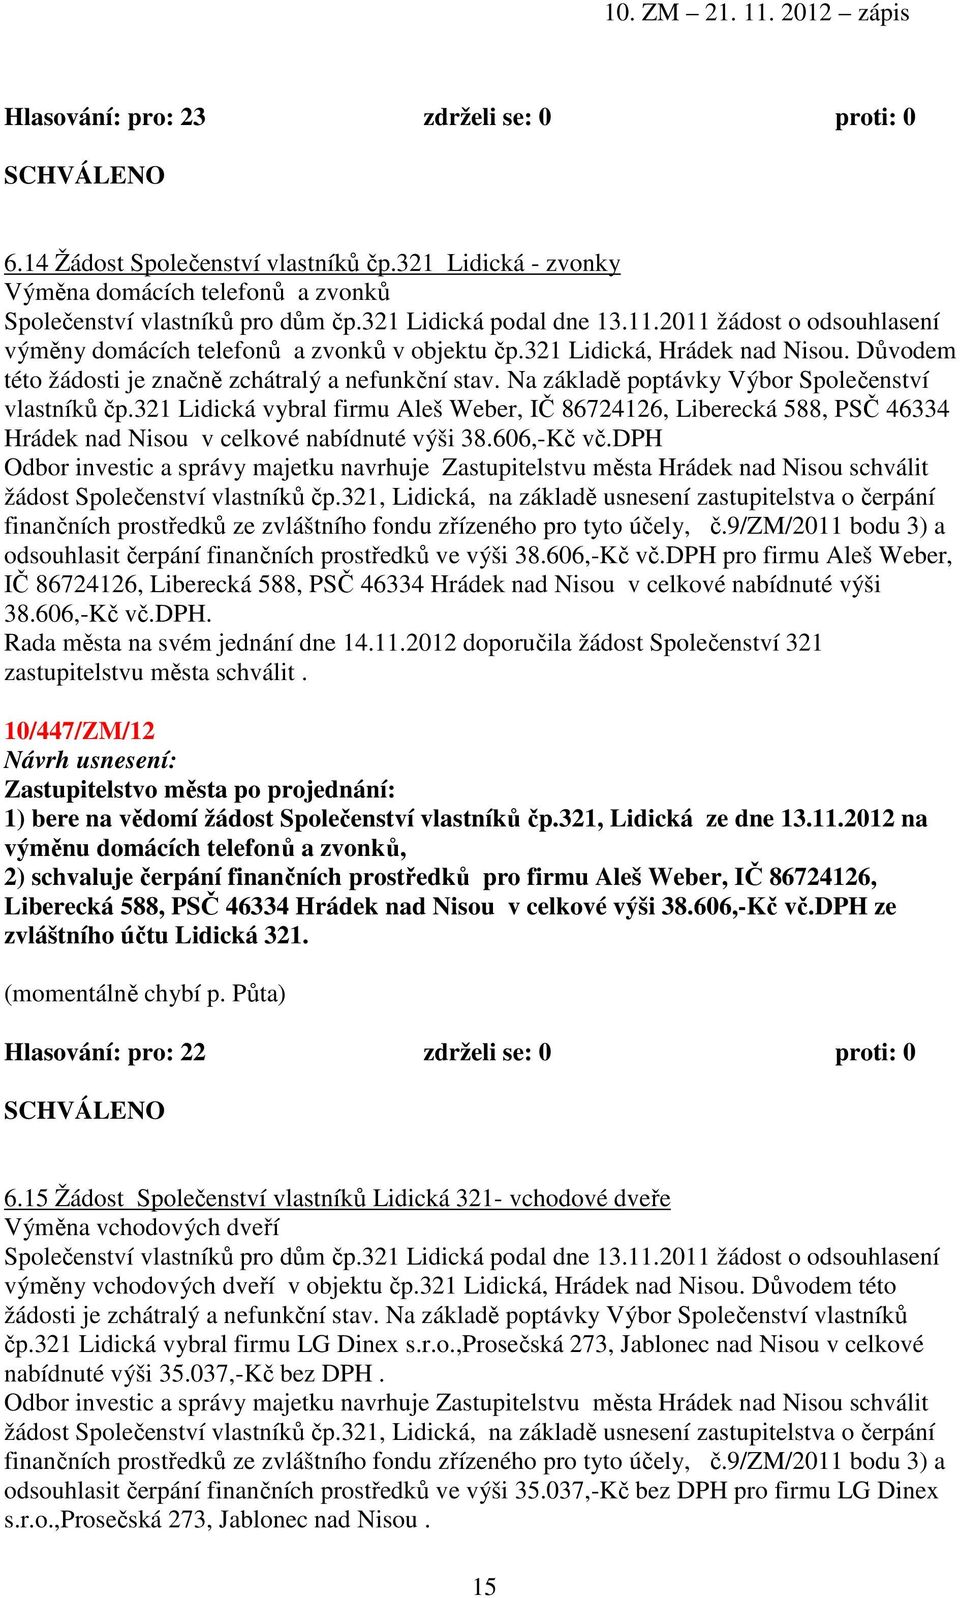 Na základě poptávky Výbor Společenství vlastníků čp.321 Lidická vybral firmu Aleš Weber, IČ 86724126, Liberecká 588, PSČ 46334 Hrádek nad Nisou v celkové nabídnuté výši 38.606,-Kč vč.